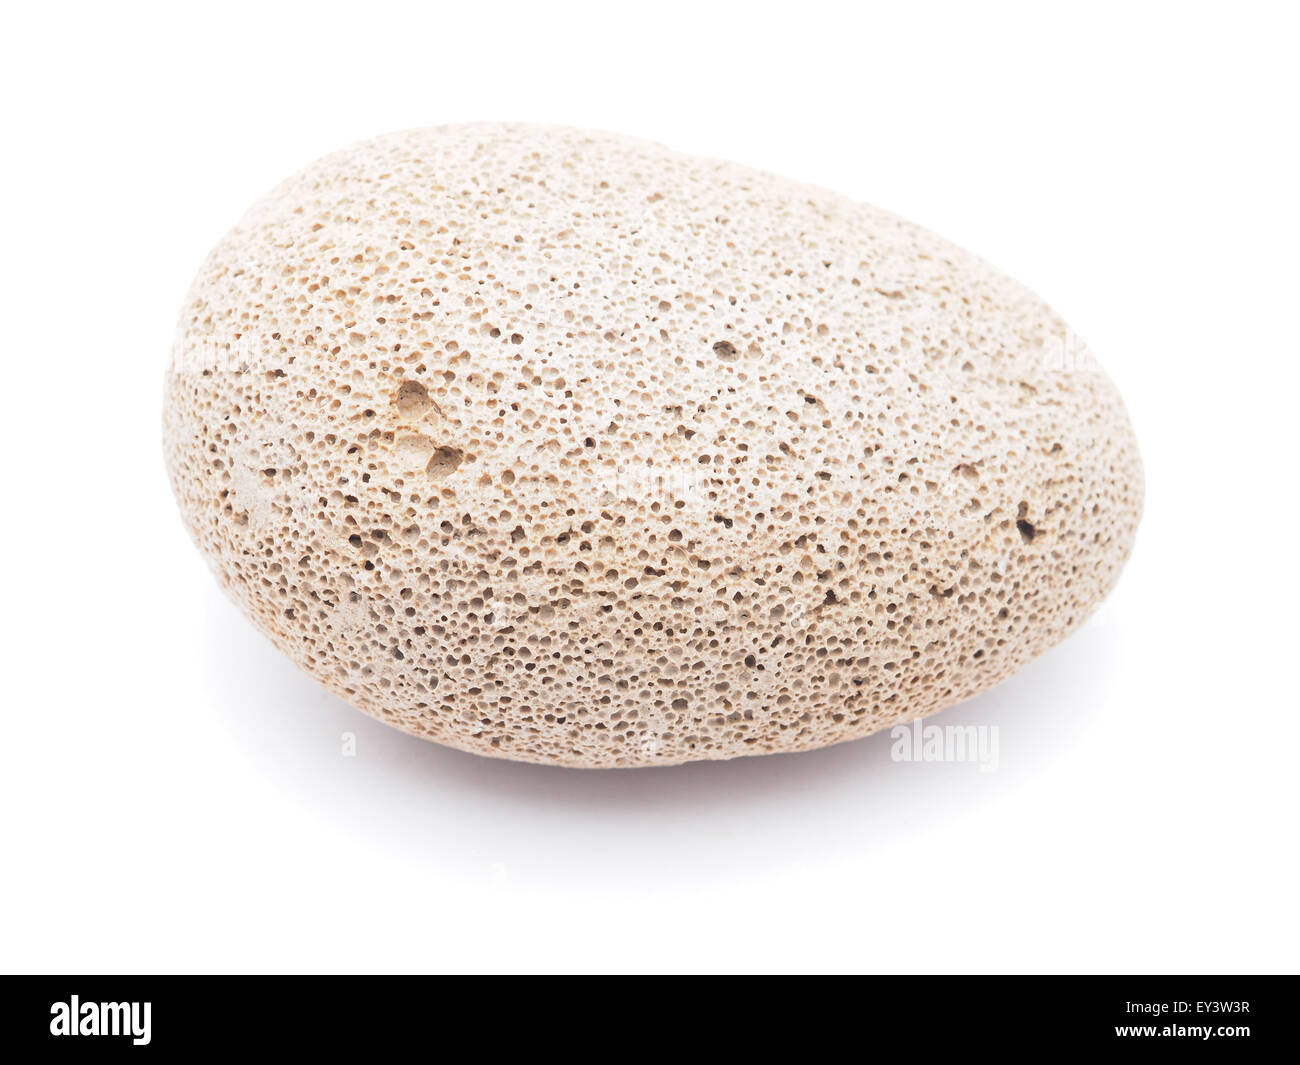 tufa stone on a white background Stock Photo